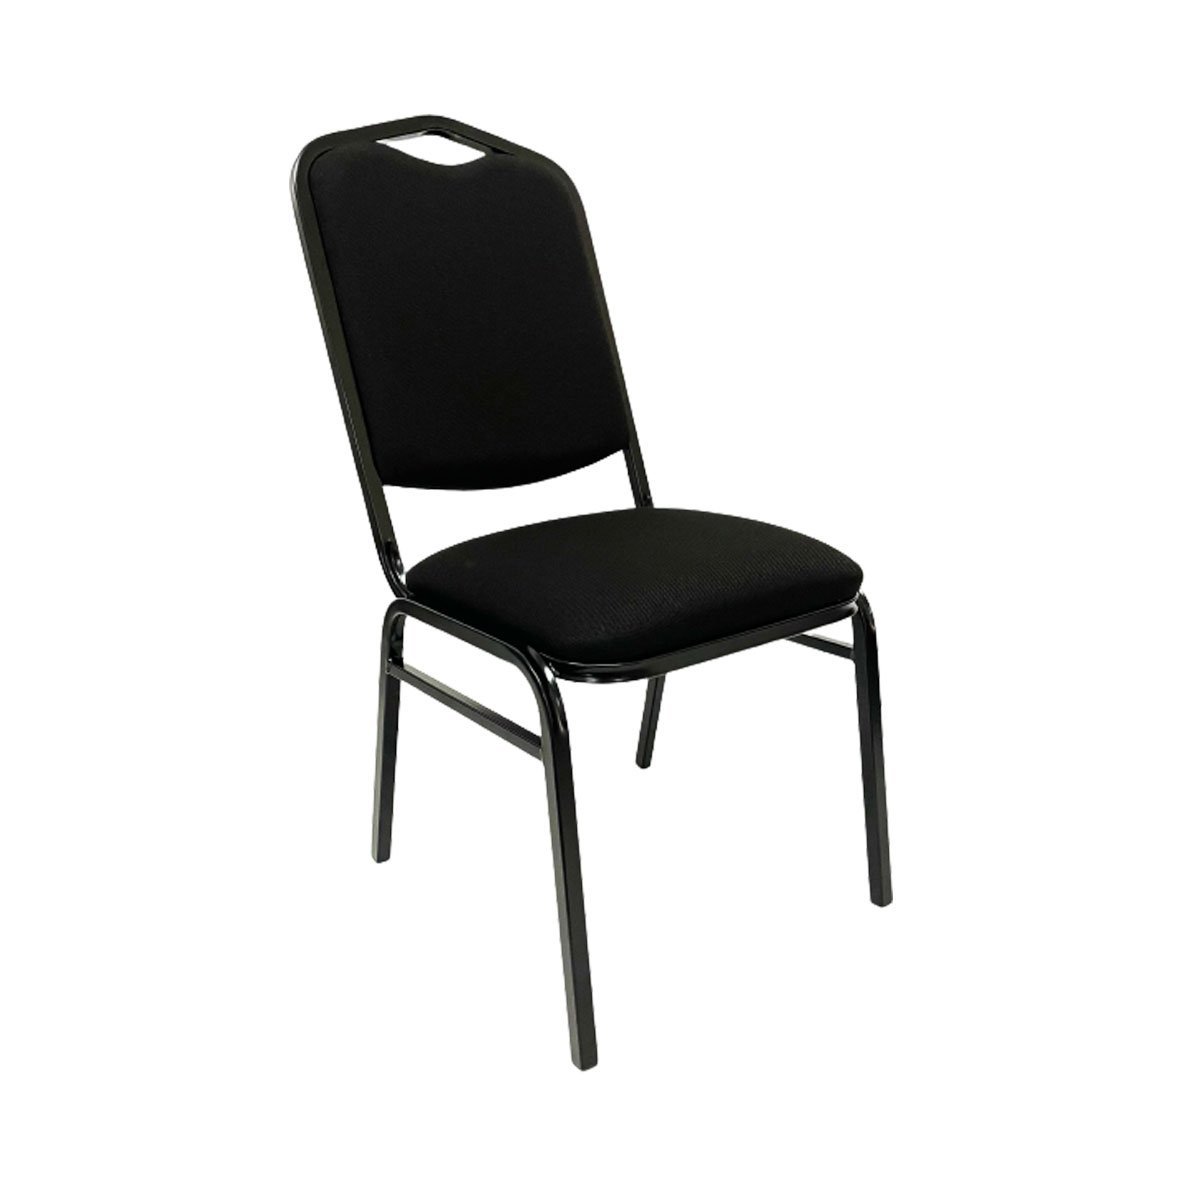 Cadeira para Hotel Auditório Igreja Restaurante Eventos com Reforço Empilhável cor Preta Poltronas d